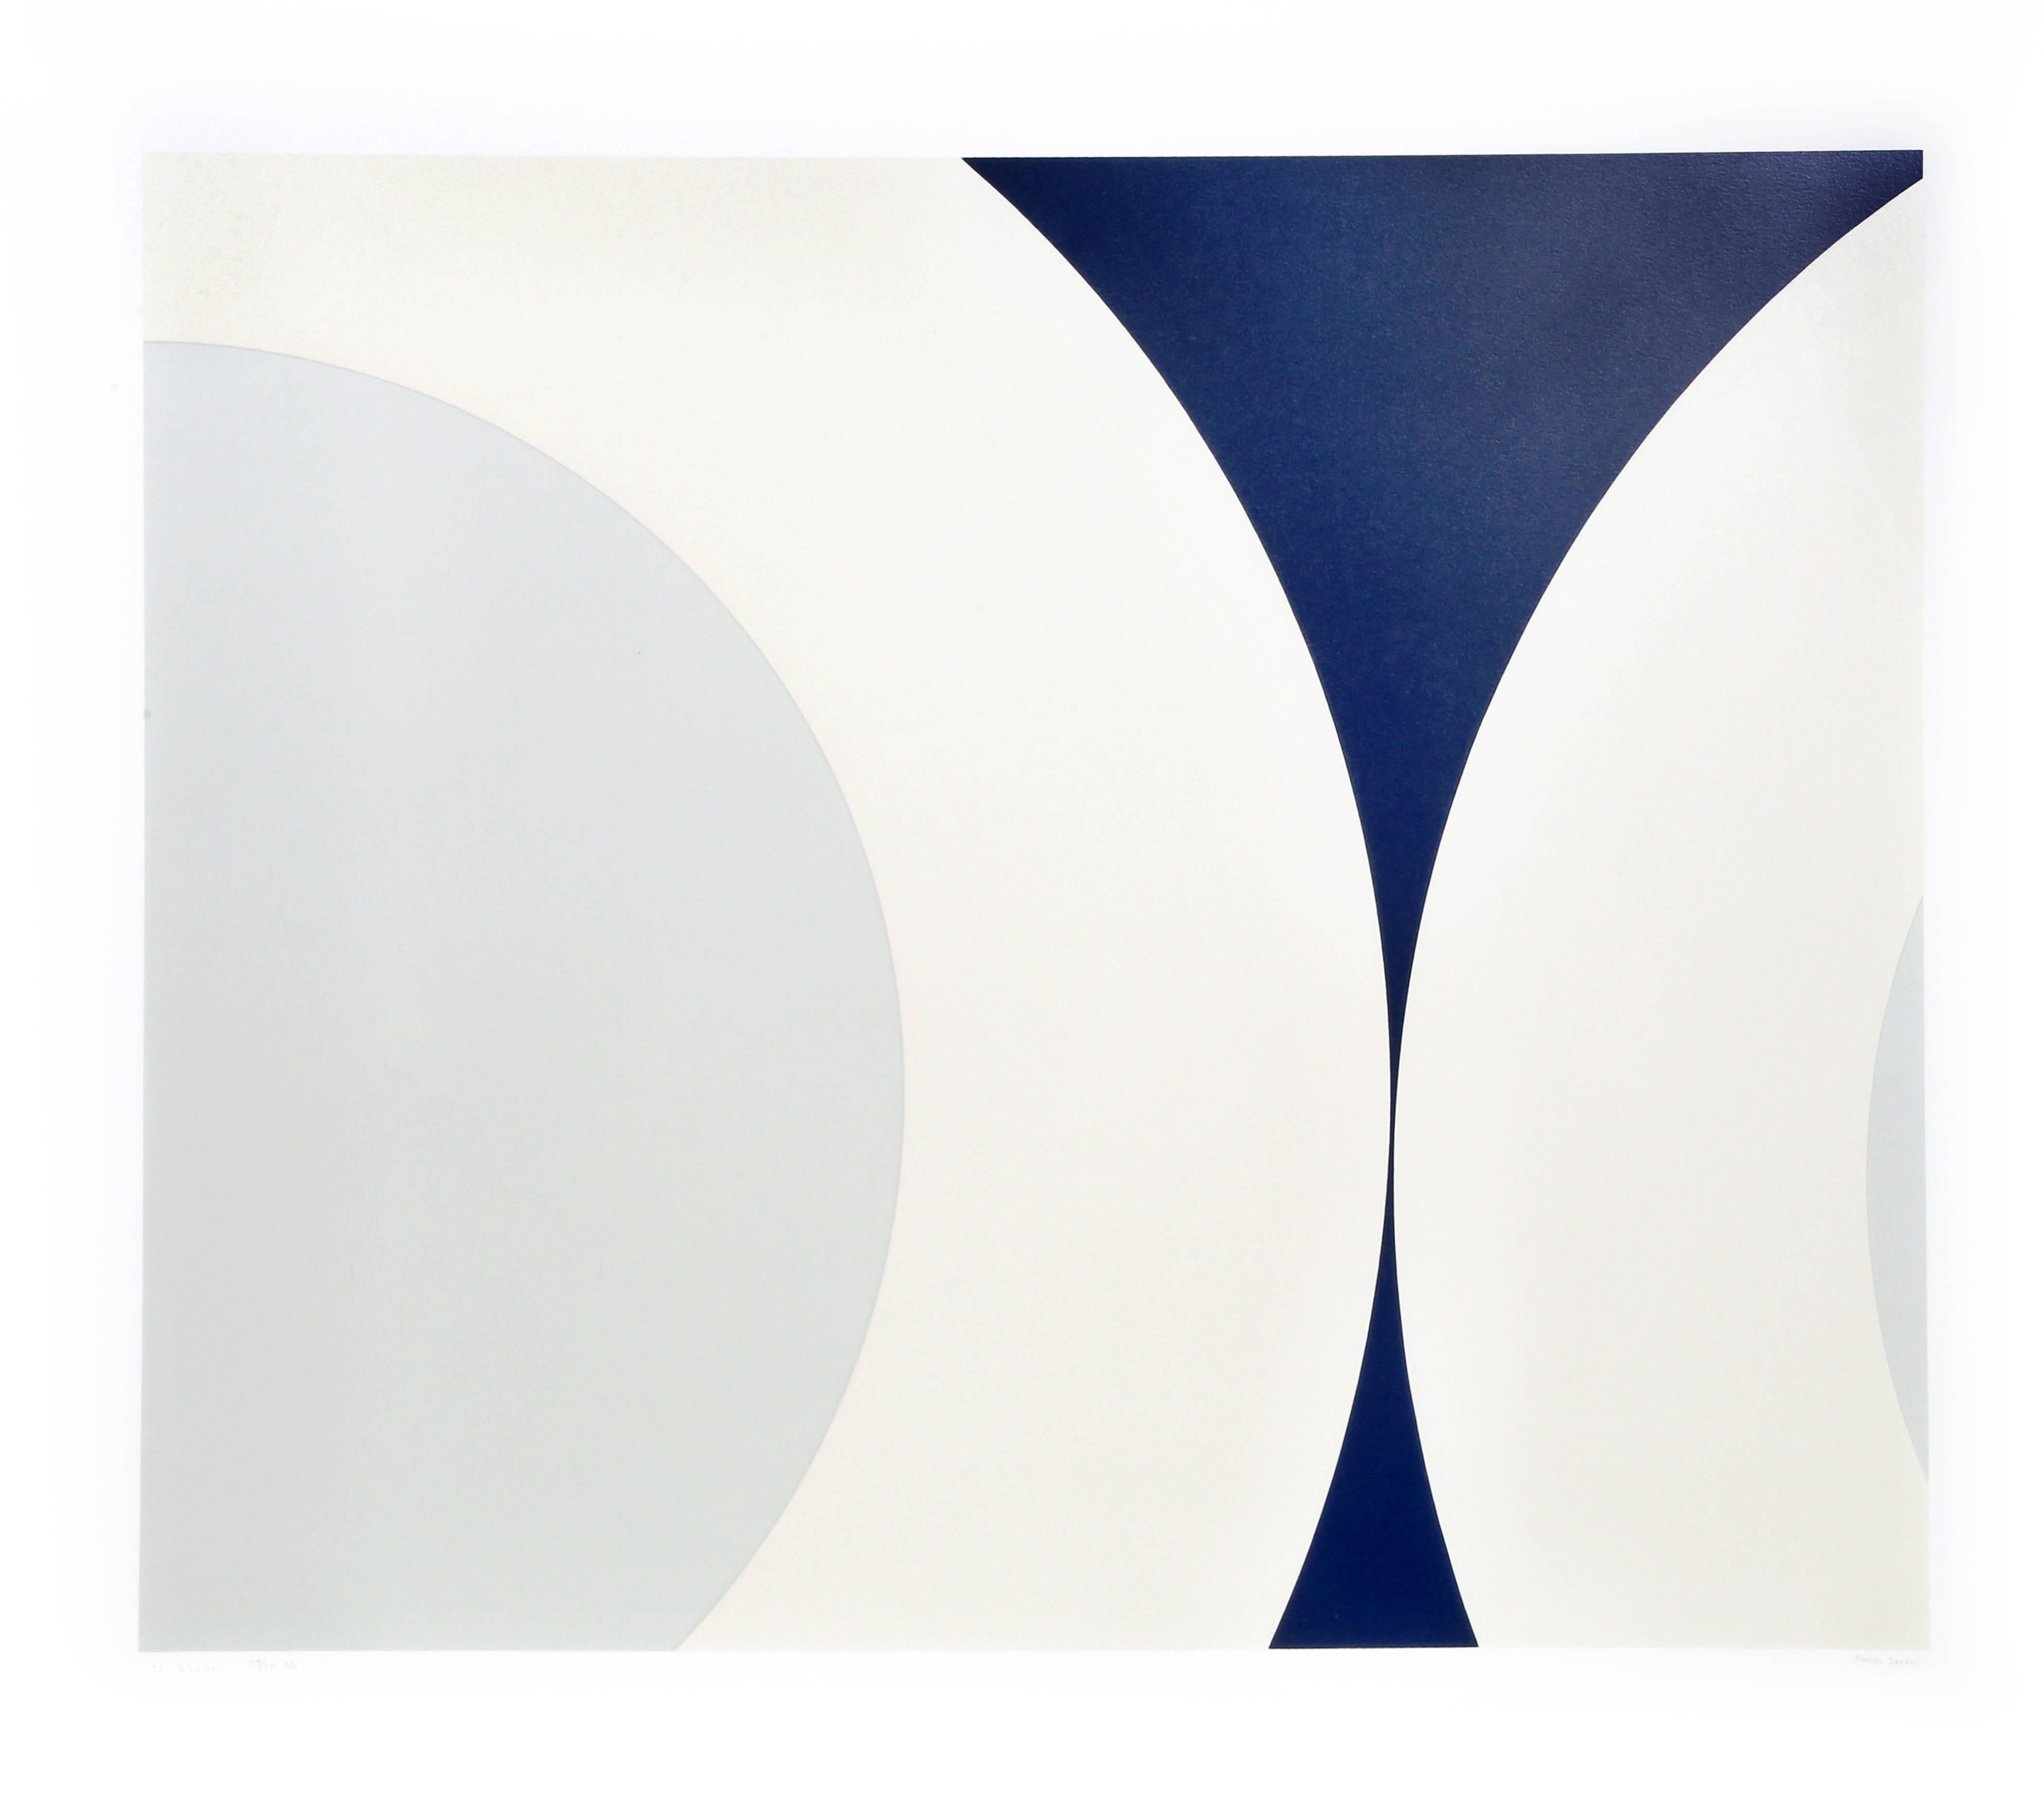 Künstler:  Nassos Daphnis, Grieche (1914 - 2010)
Titel:  SS 27-76
Jahr:  1976
Medium:  Siebdruck, signiert und nummeriert mit Bleistift
Auflage:  100, AP 30
Größe:  33 Zoll x 37 Zoll (83,82 cm x 93,98 cm)